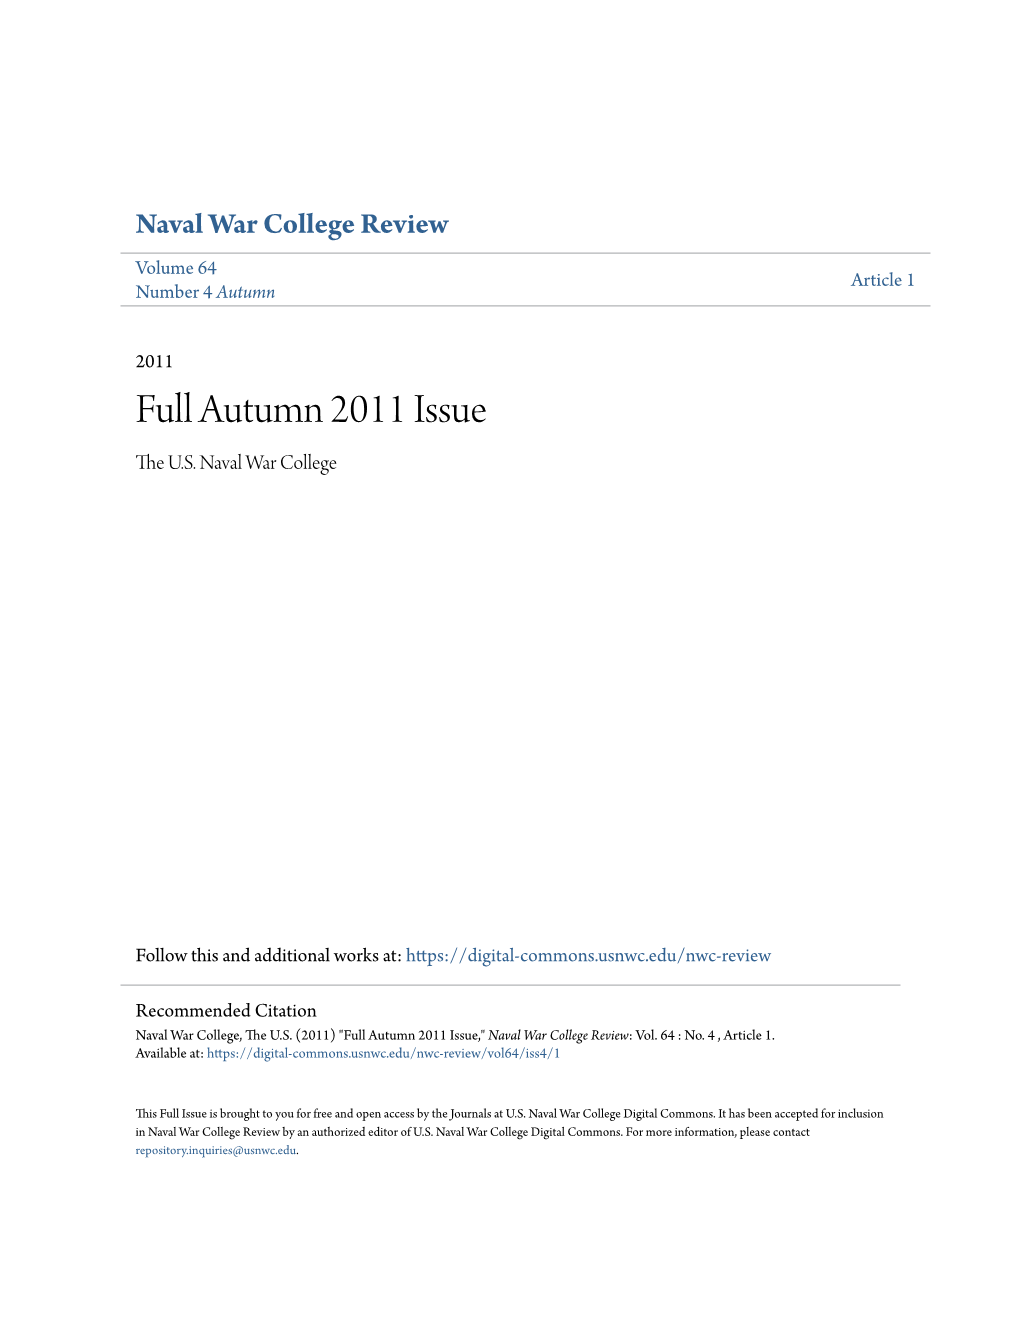 Full Autumn 2011 Issue the .SU